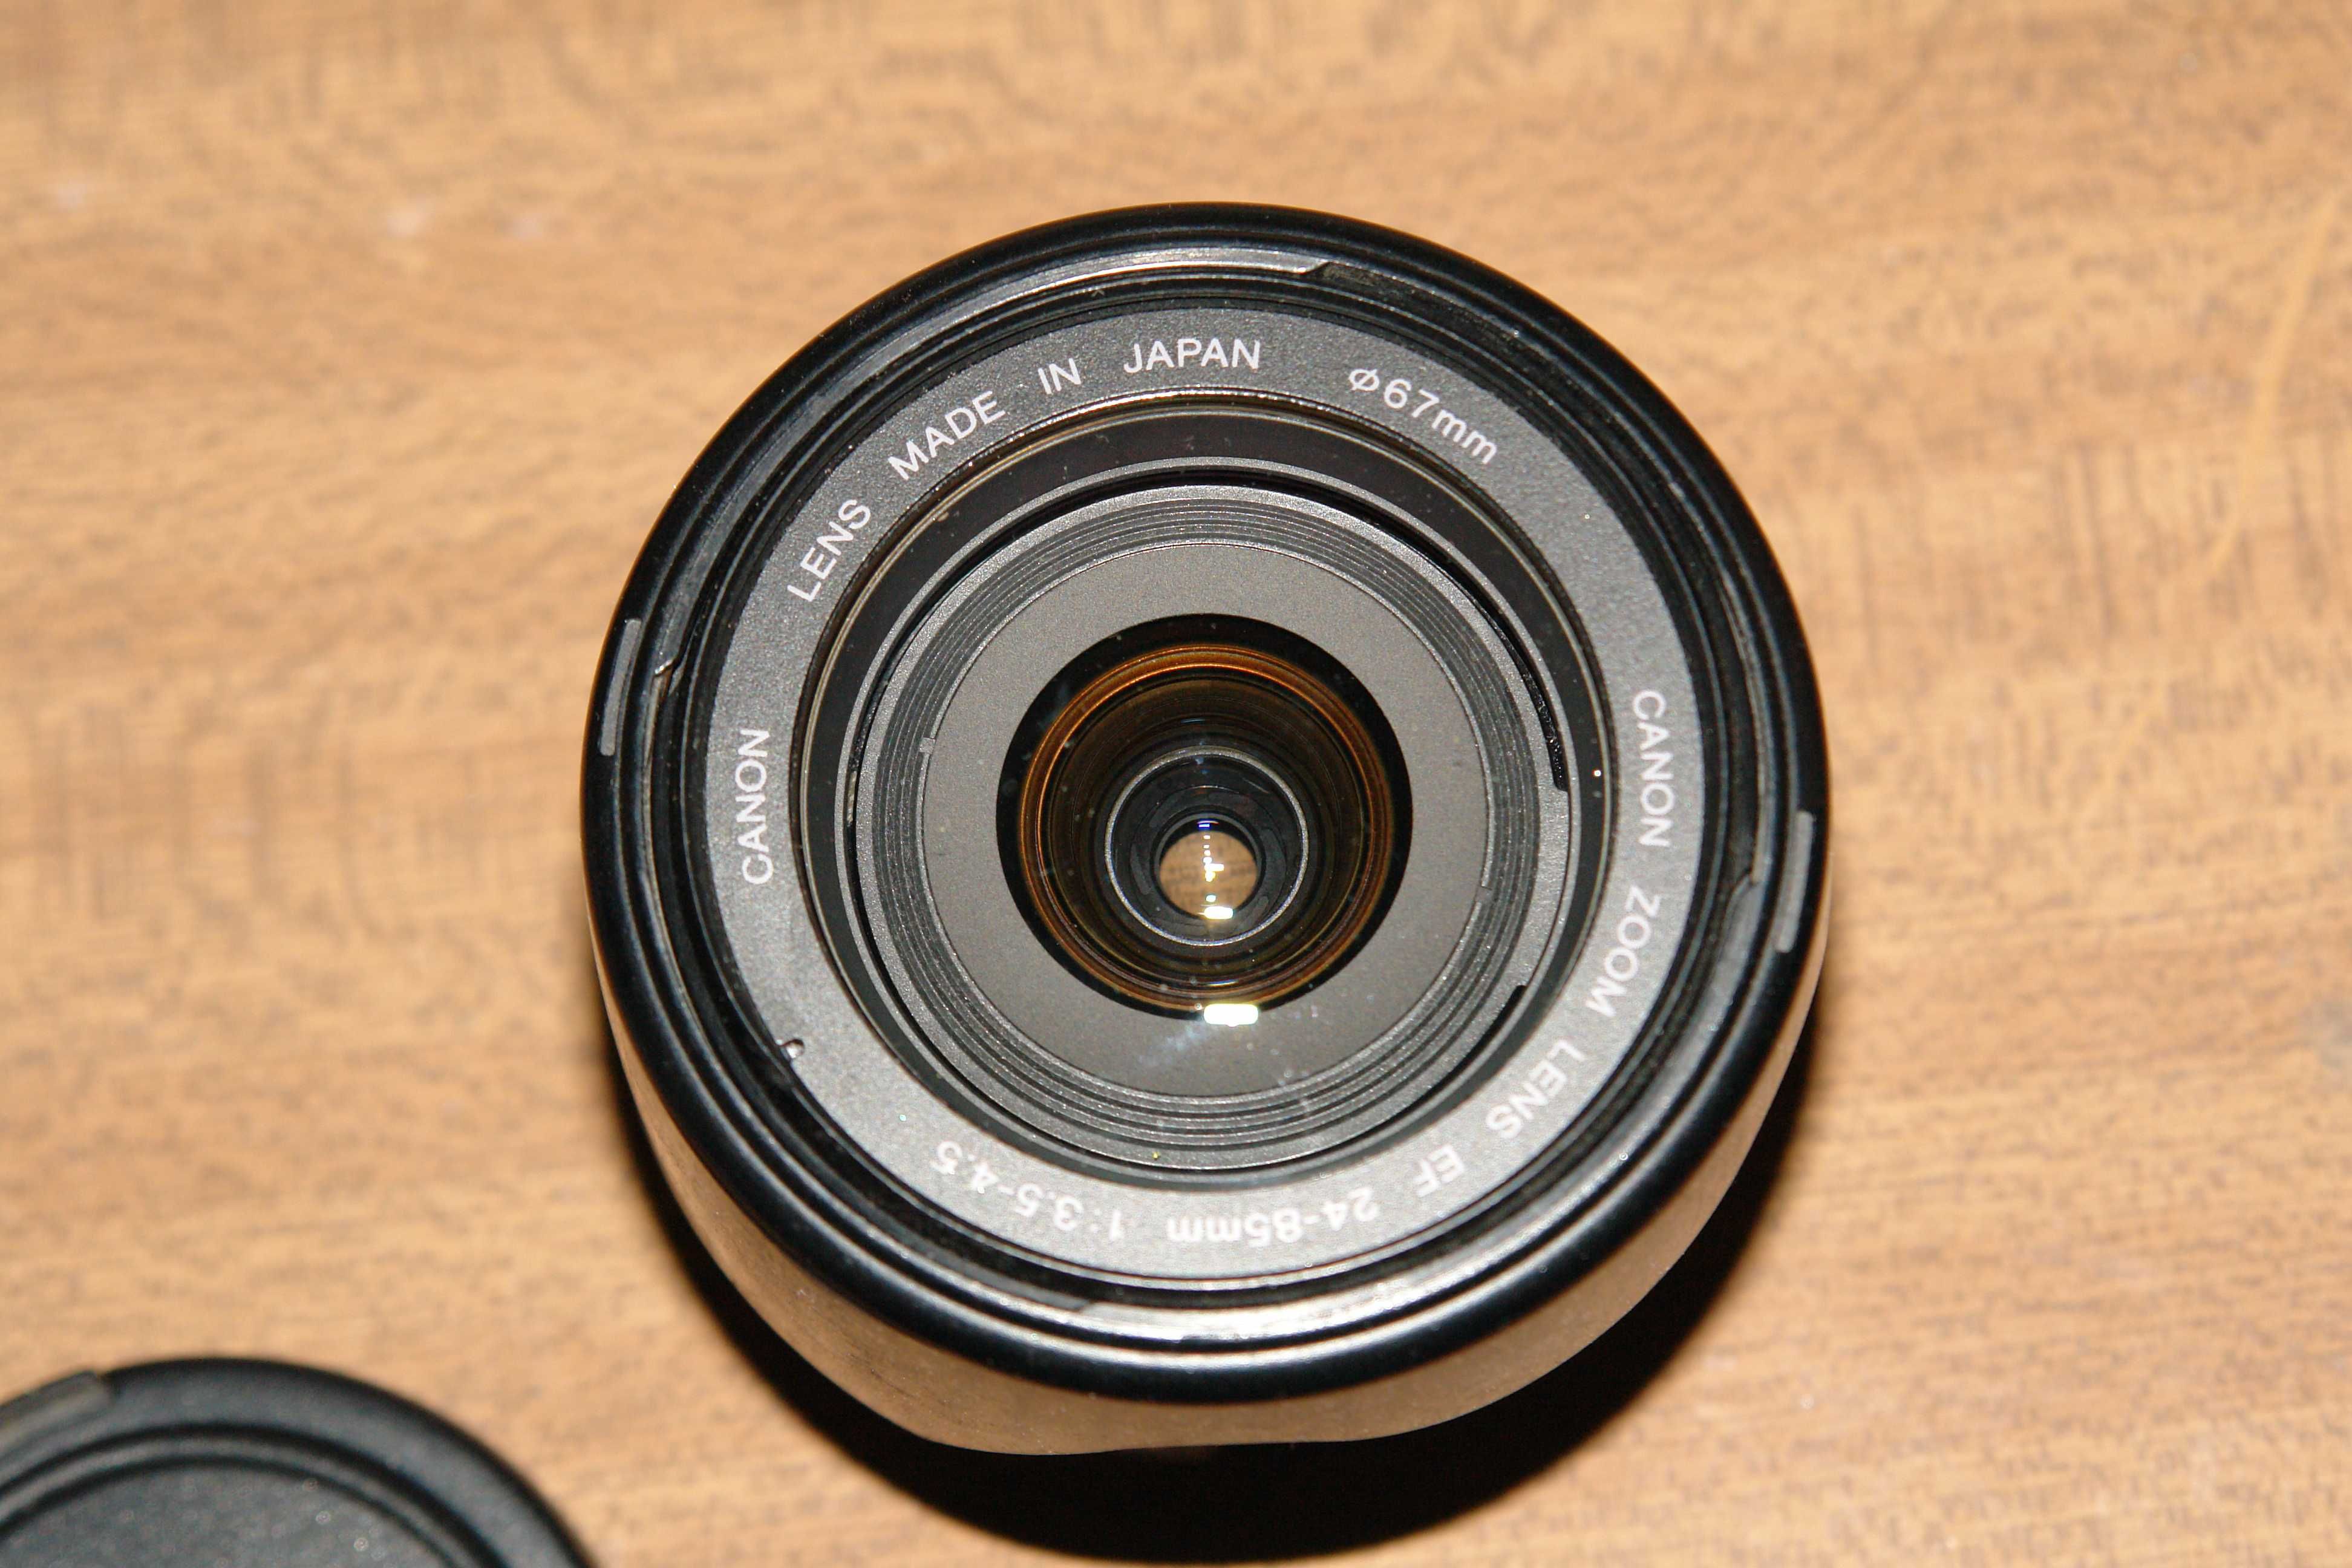 Canon 5D classic коробочный комплект, торга нет, скорее цену подниму